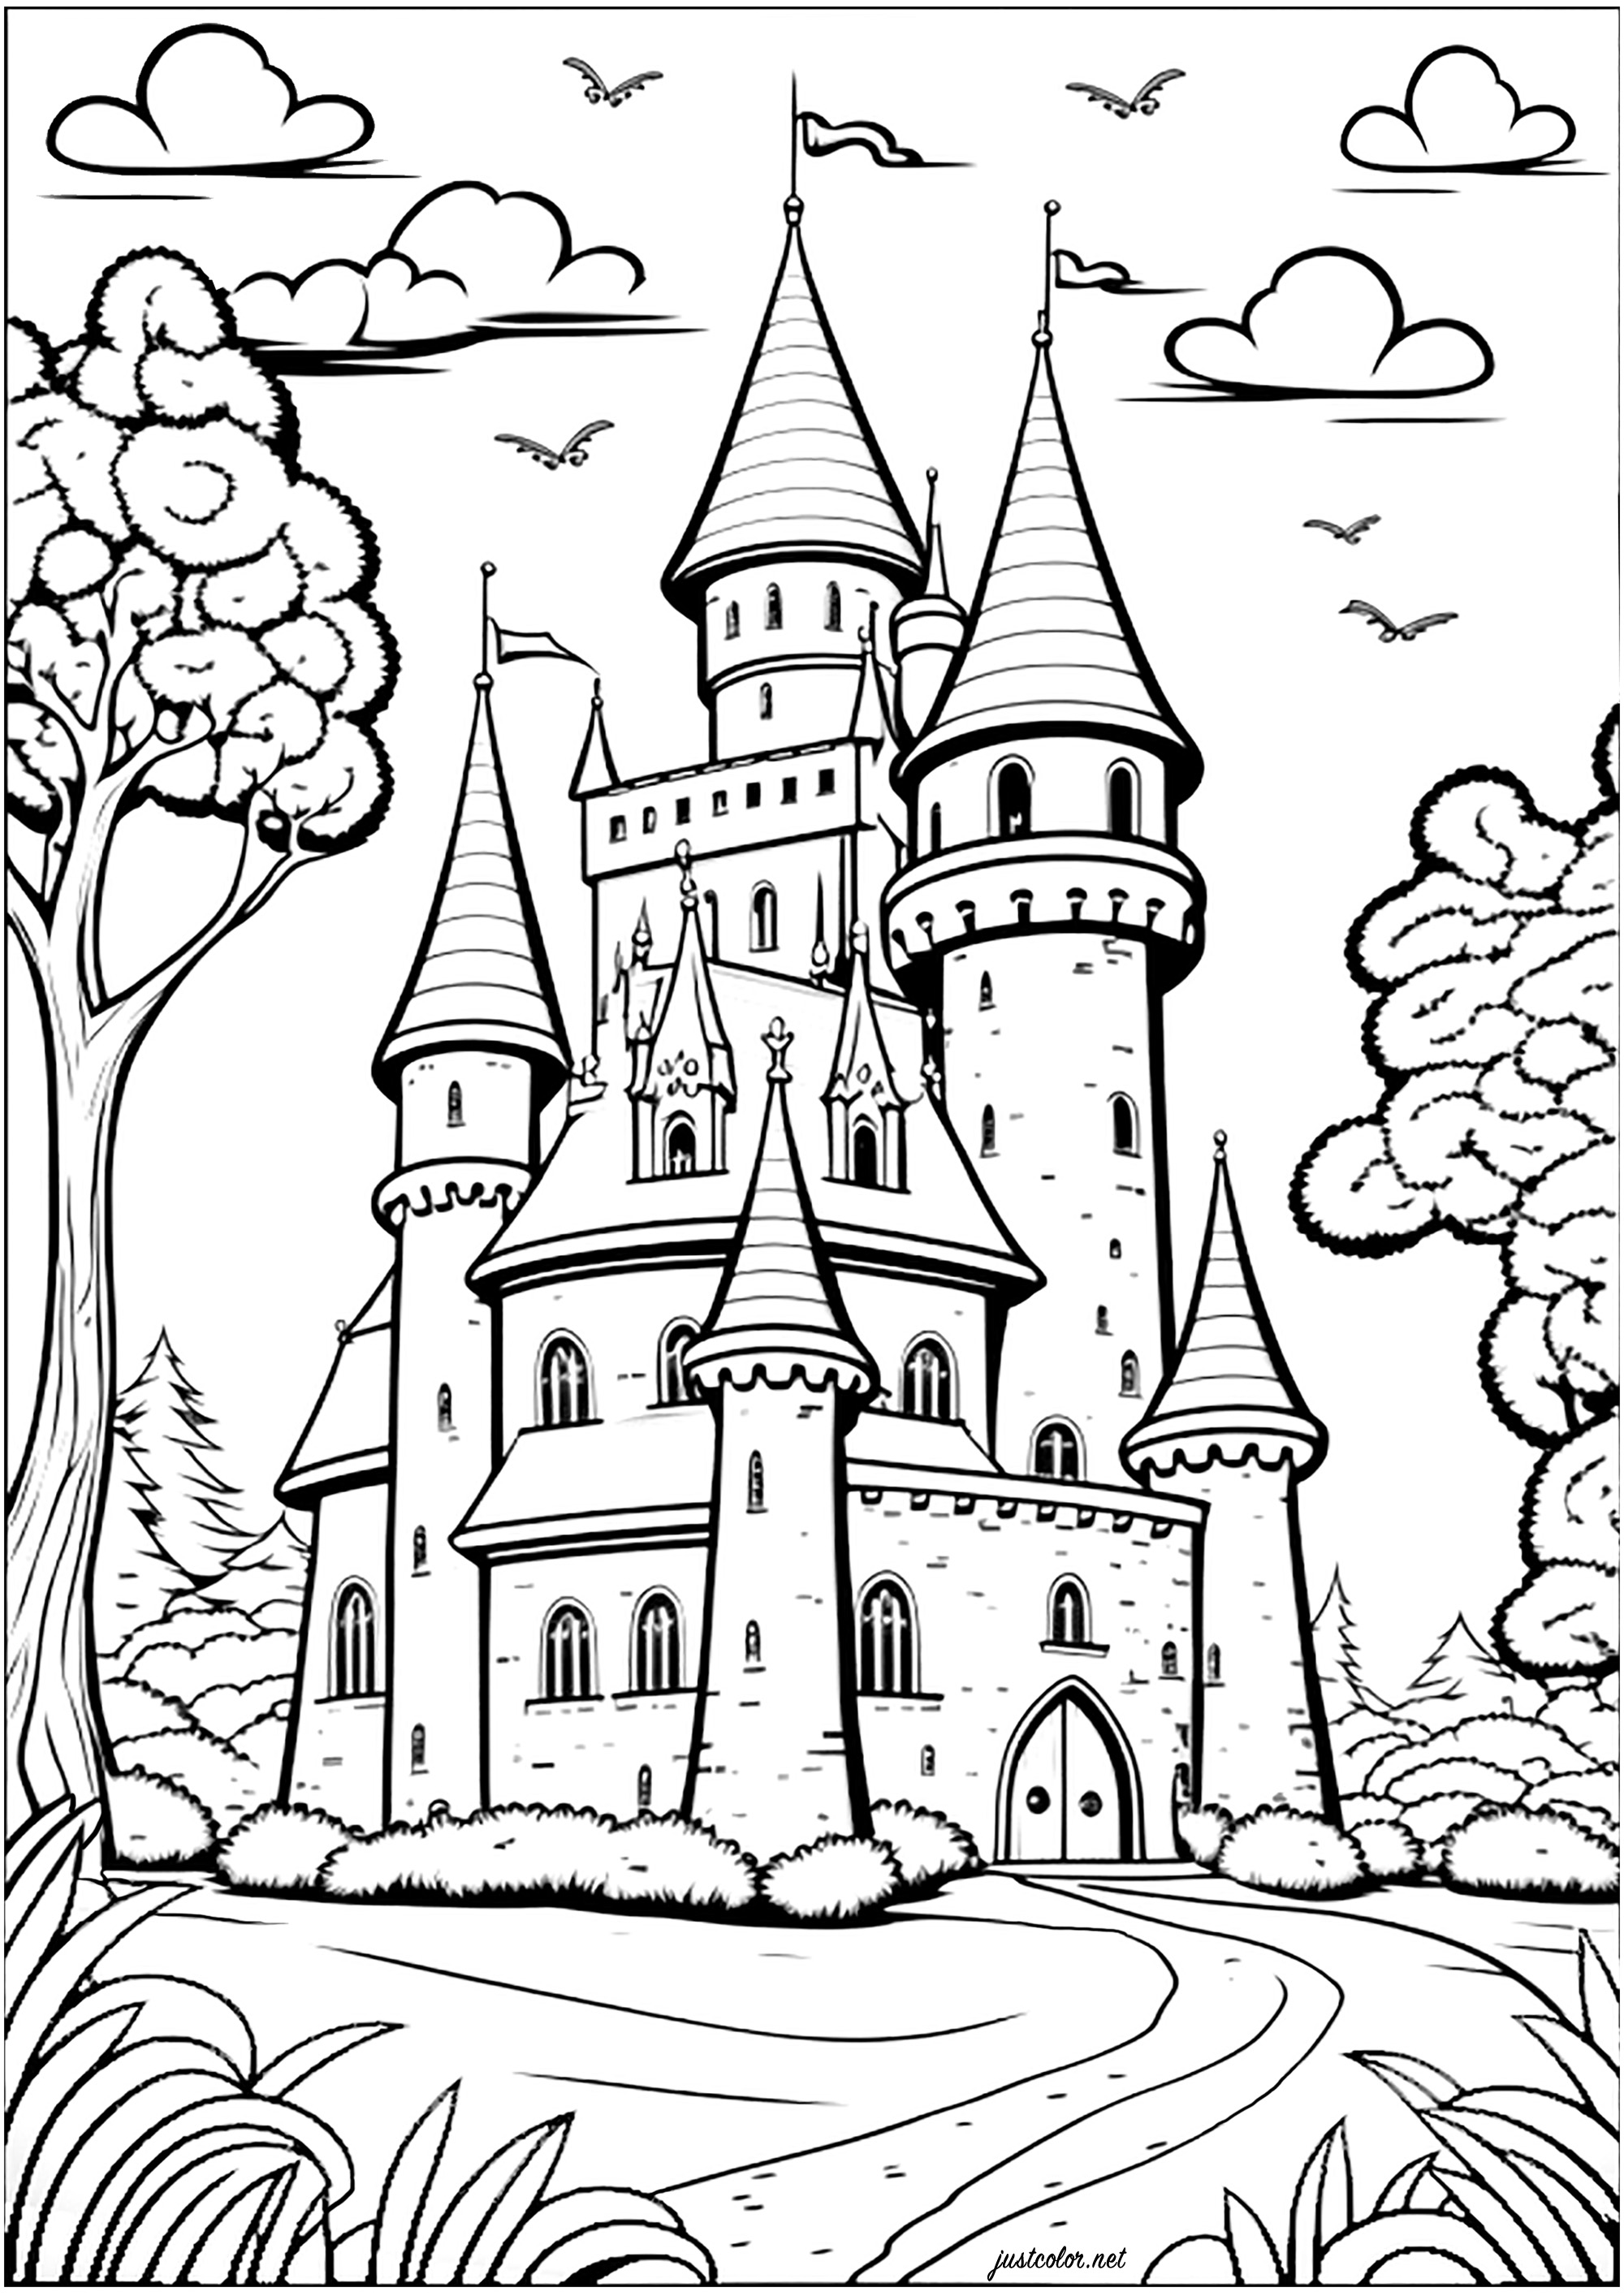 Colorazione di un castello in un regno immaginario. Colorate tutte le torrette, le finestre, le porte e le pareti per un momento incantato!